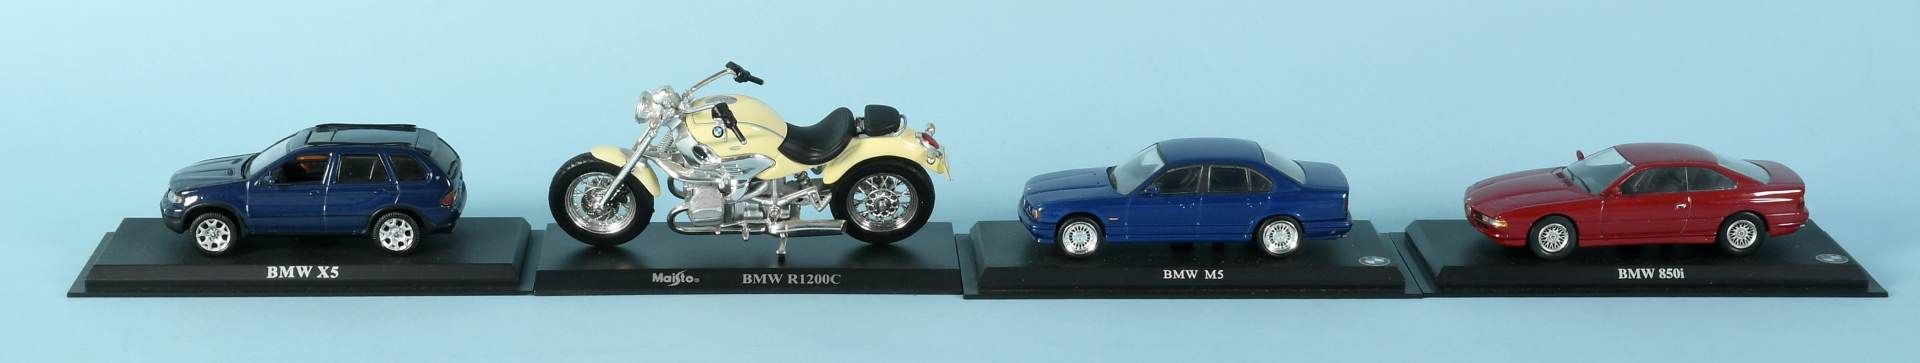 Modellautos, 3 Stück und 1 Motorrad "BMW"